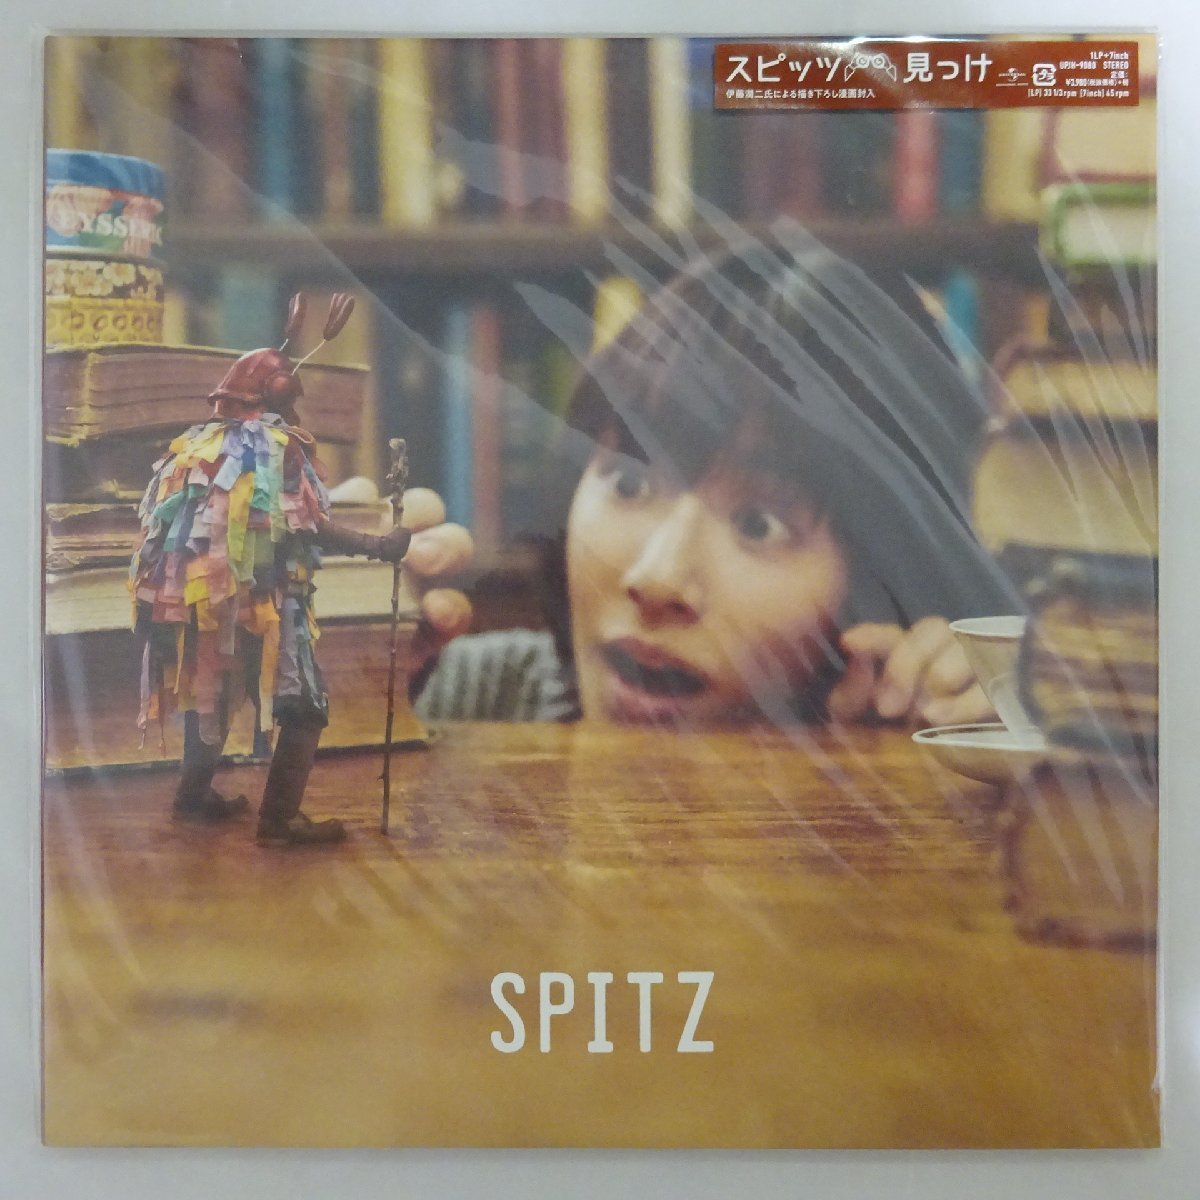 ヤフオク! -「spitzスピッツ」(レコード) の落札相場・落札価格